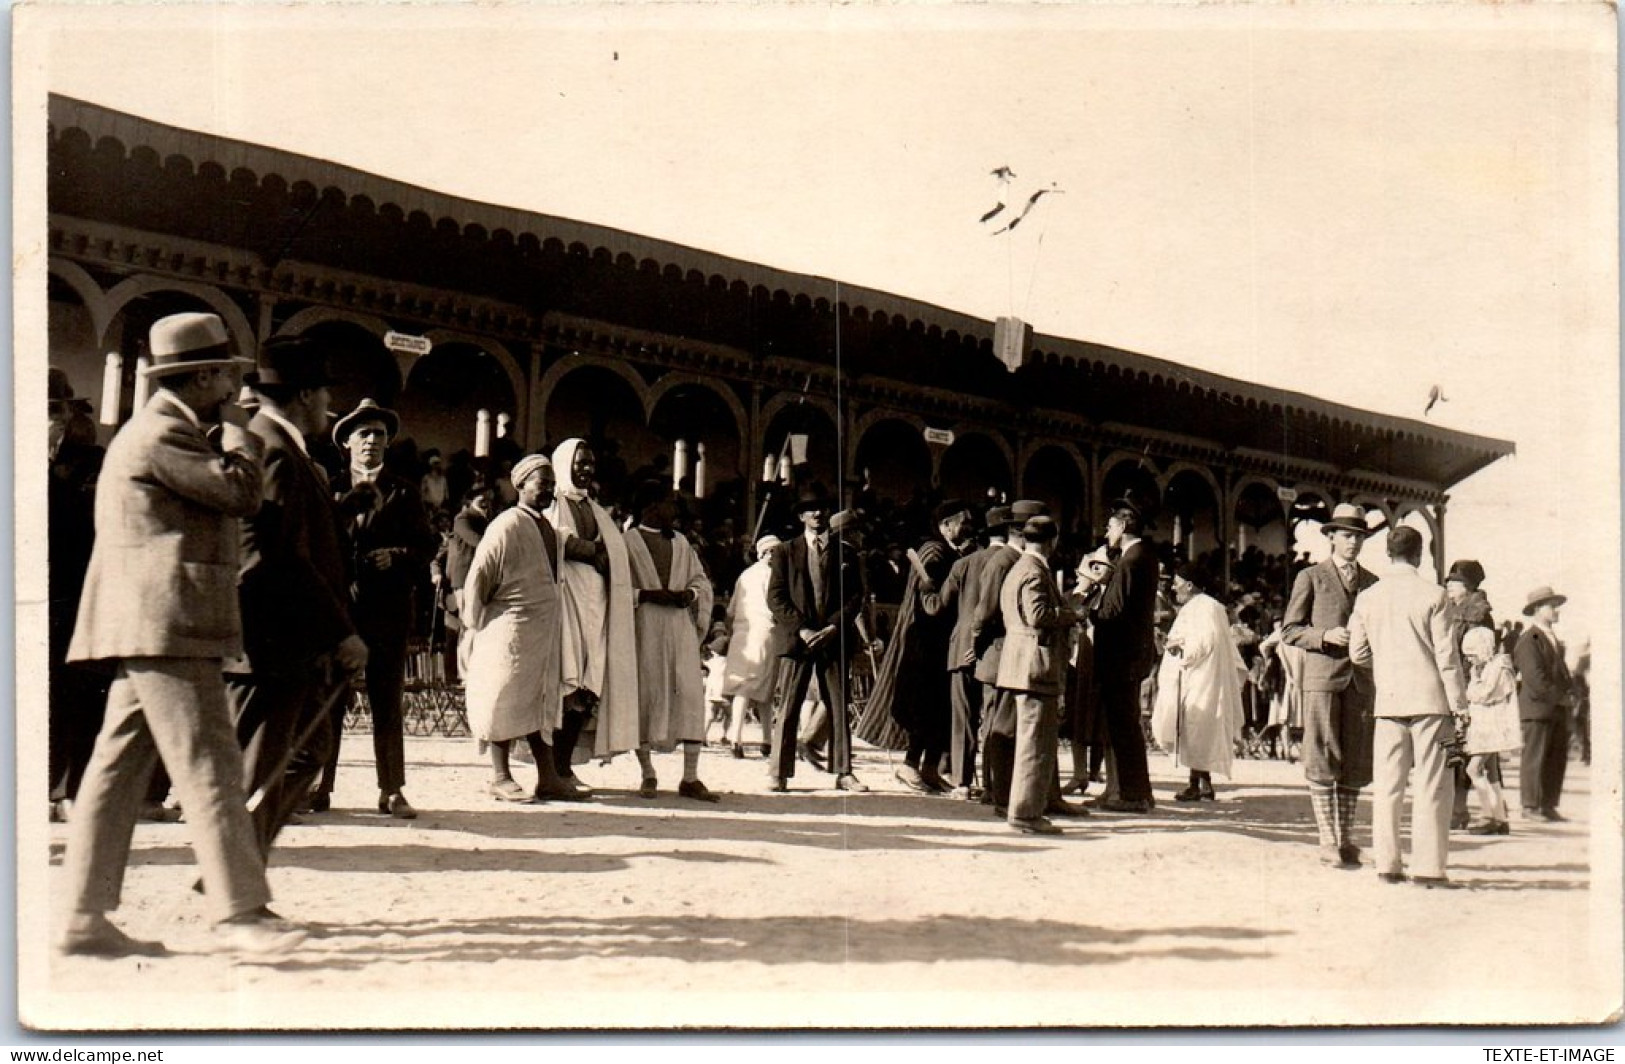 TUNISIE - SFAX - CARTE PHOTO - Les Courses 06 Nov 1927 - Tunisia